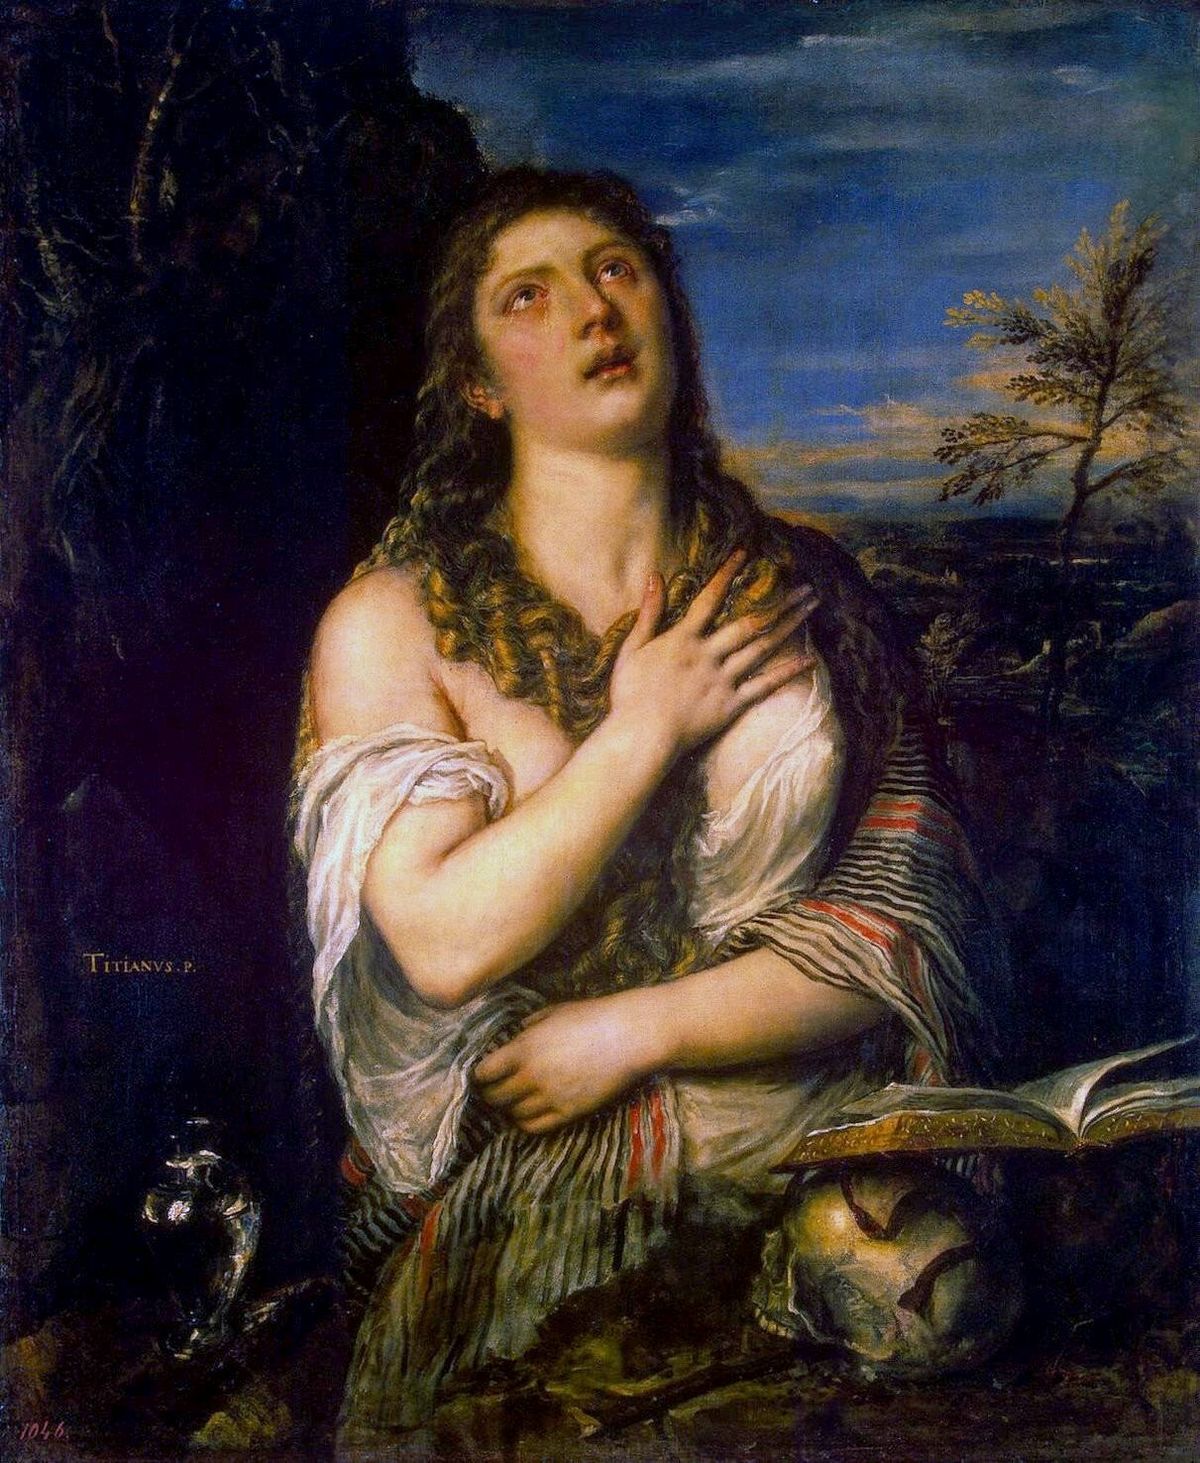 Penitent Magdalene (Titian, 1565)